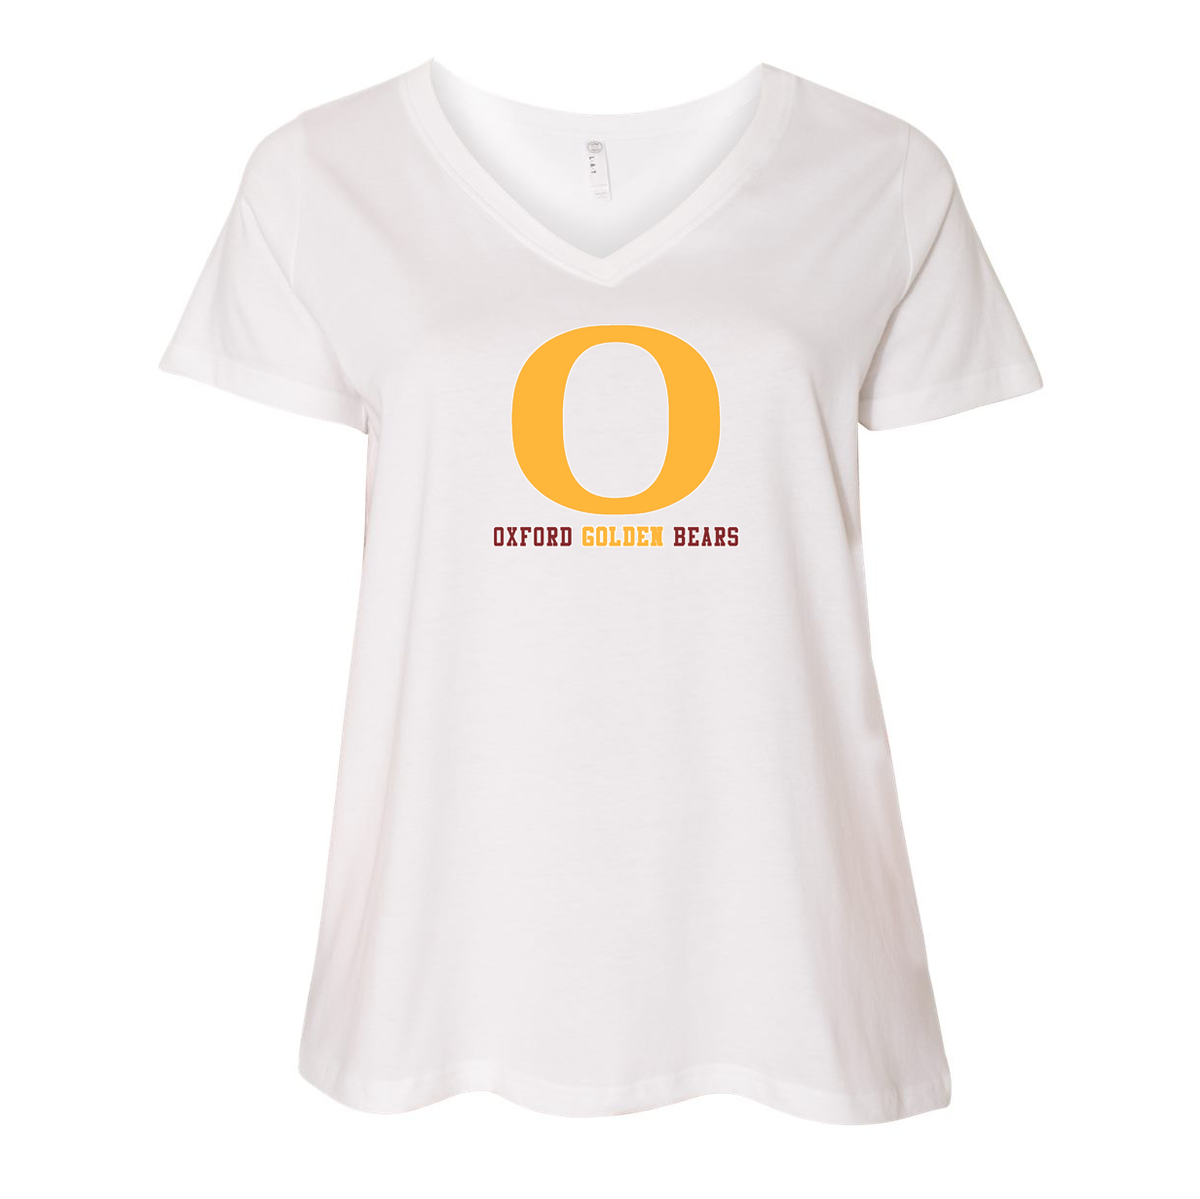 Oxford Golden Bears Curvy Womens T-Shirt